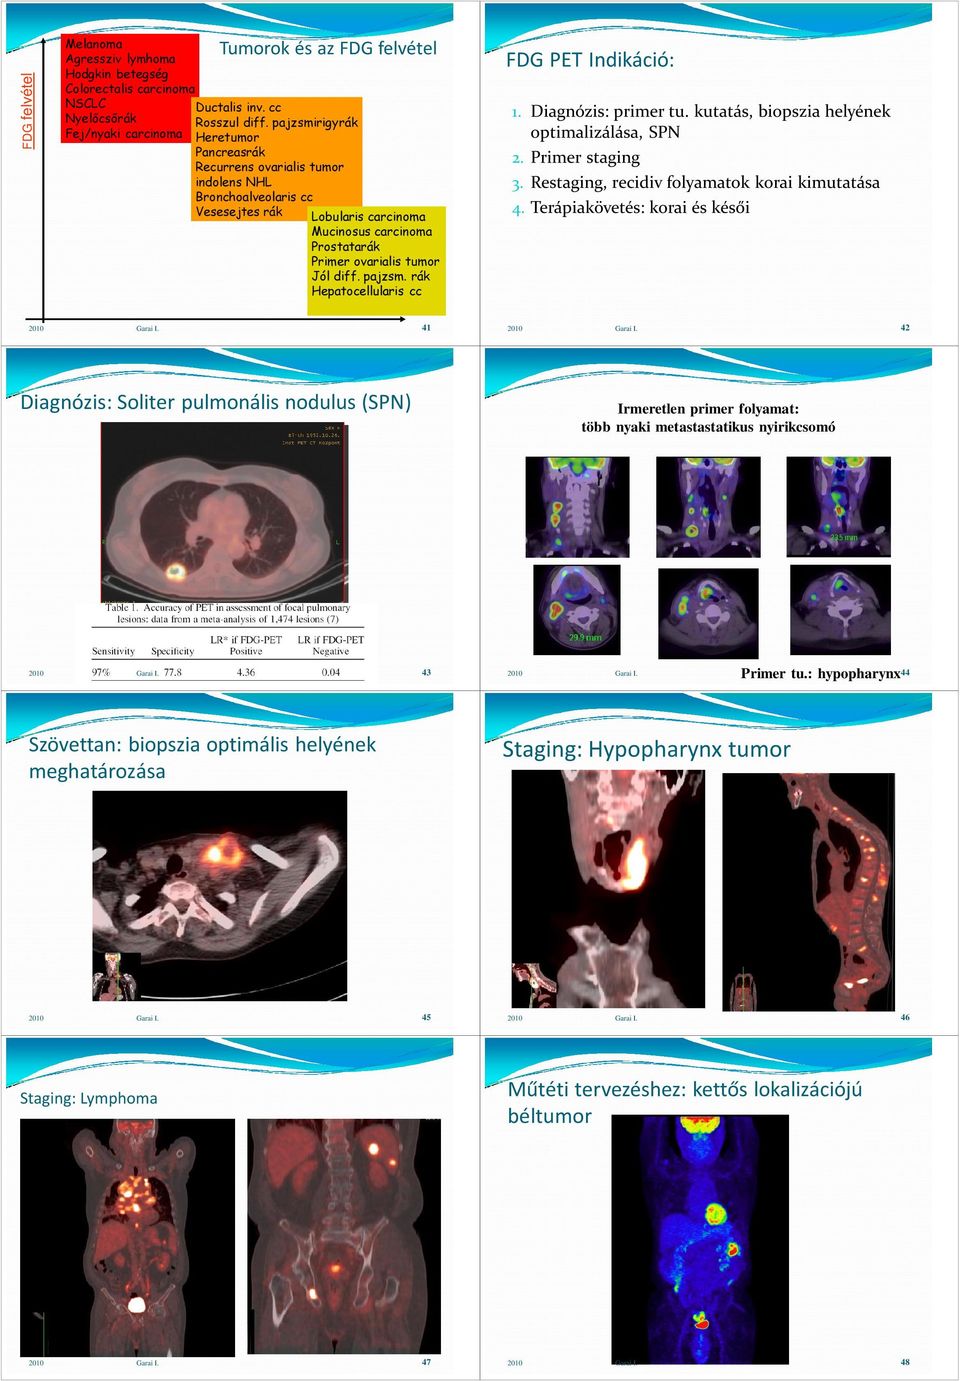 ovarialis tumor Jól diff. pajzsm. rák Hepatocellularis cc FDG PET Indikáció: 1. Diagnózis: primer tu. kutatás, biopszia helyének optimalizálása, SPN 2. Primer staging 3.